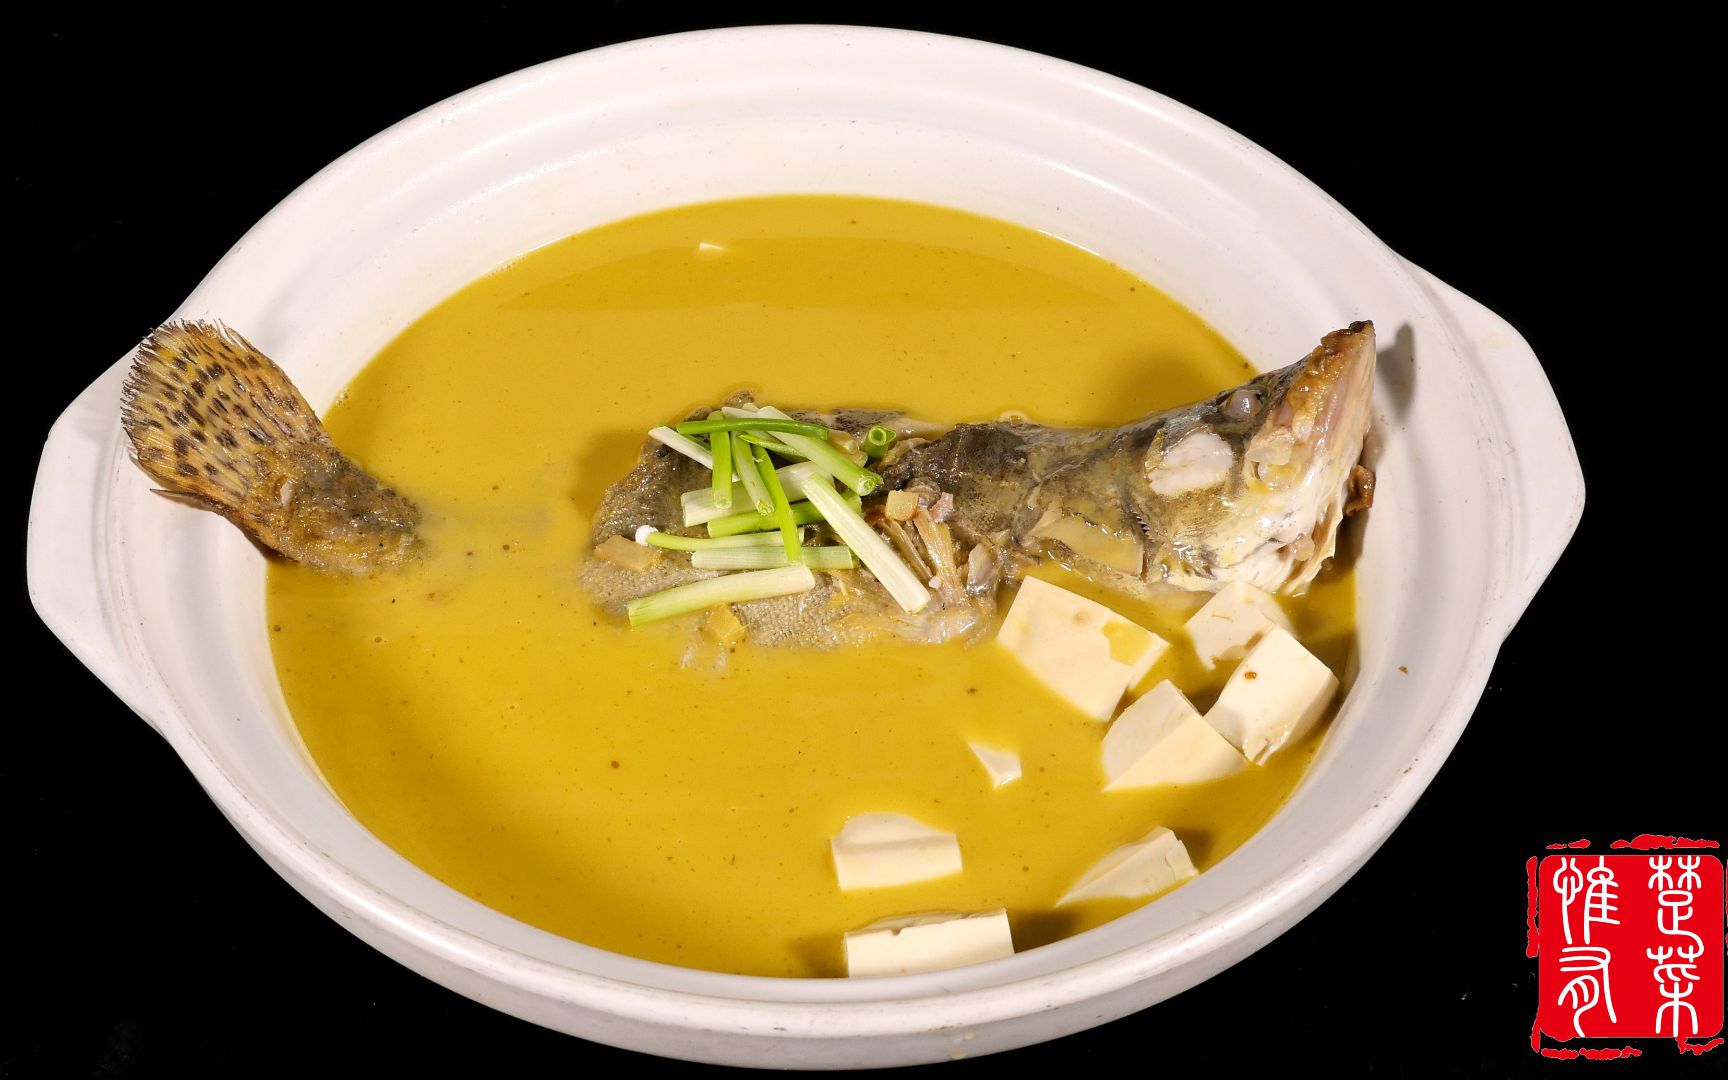 海带豆腐汤怎么做_海带豆腐汤的做法_厨房笔记-fang_豆果美食